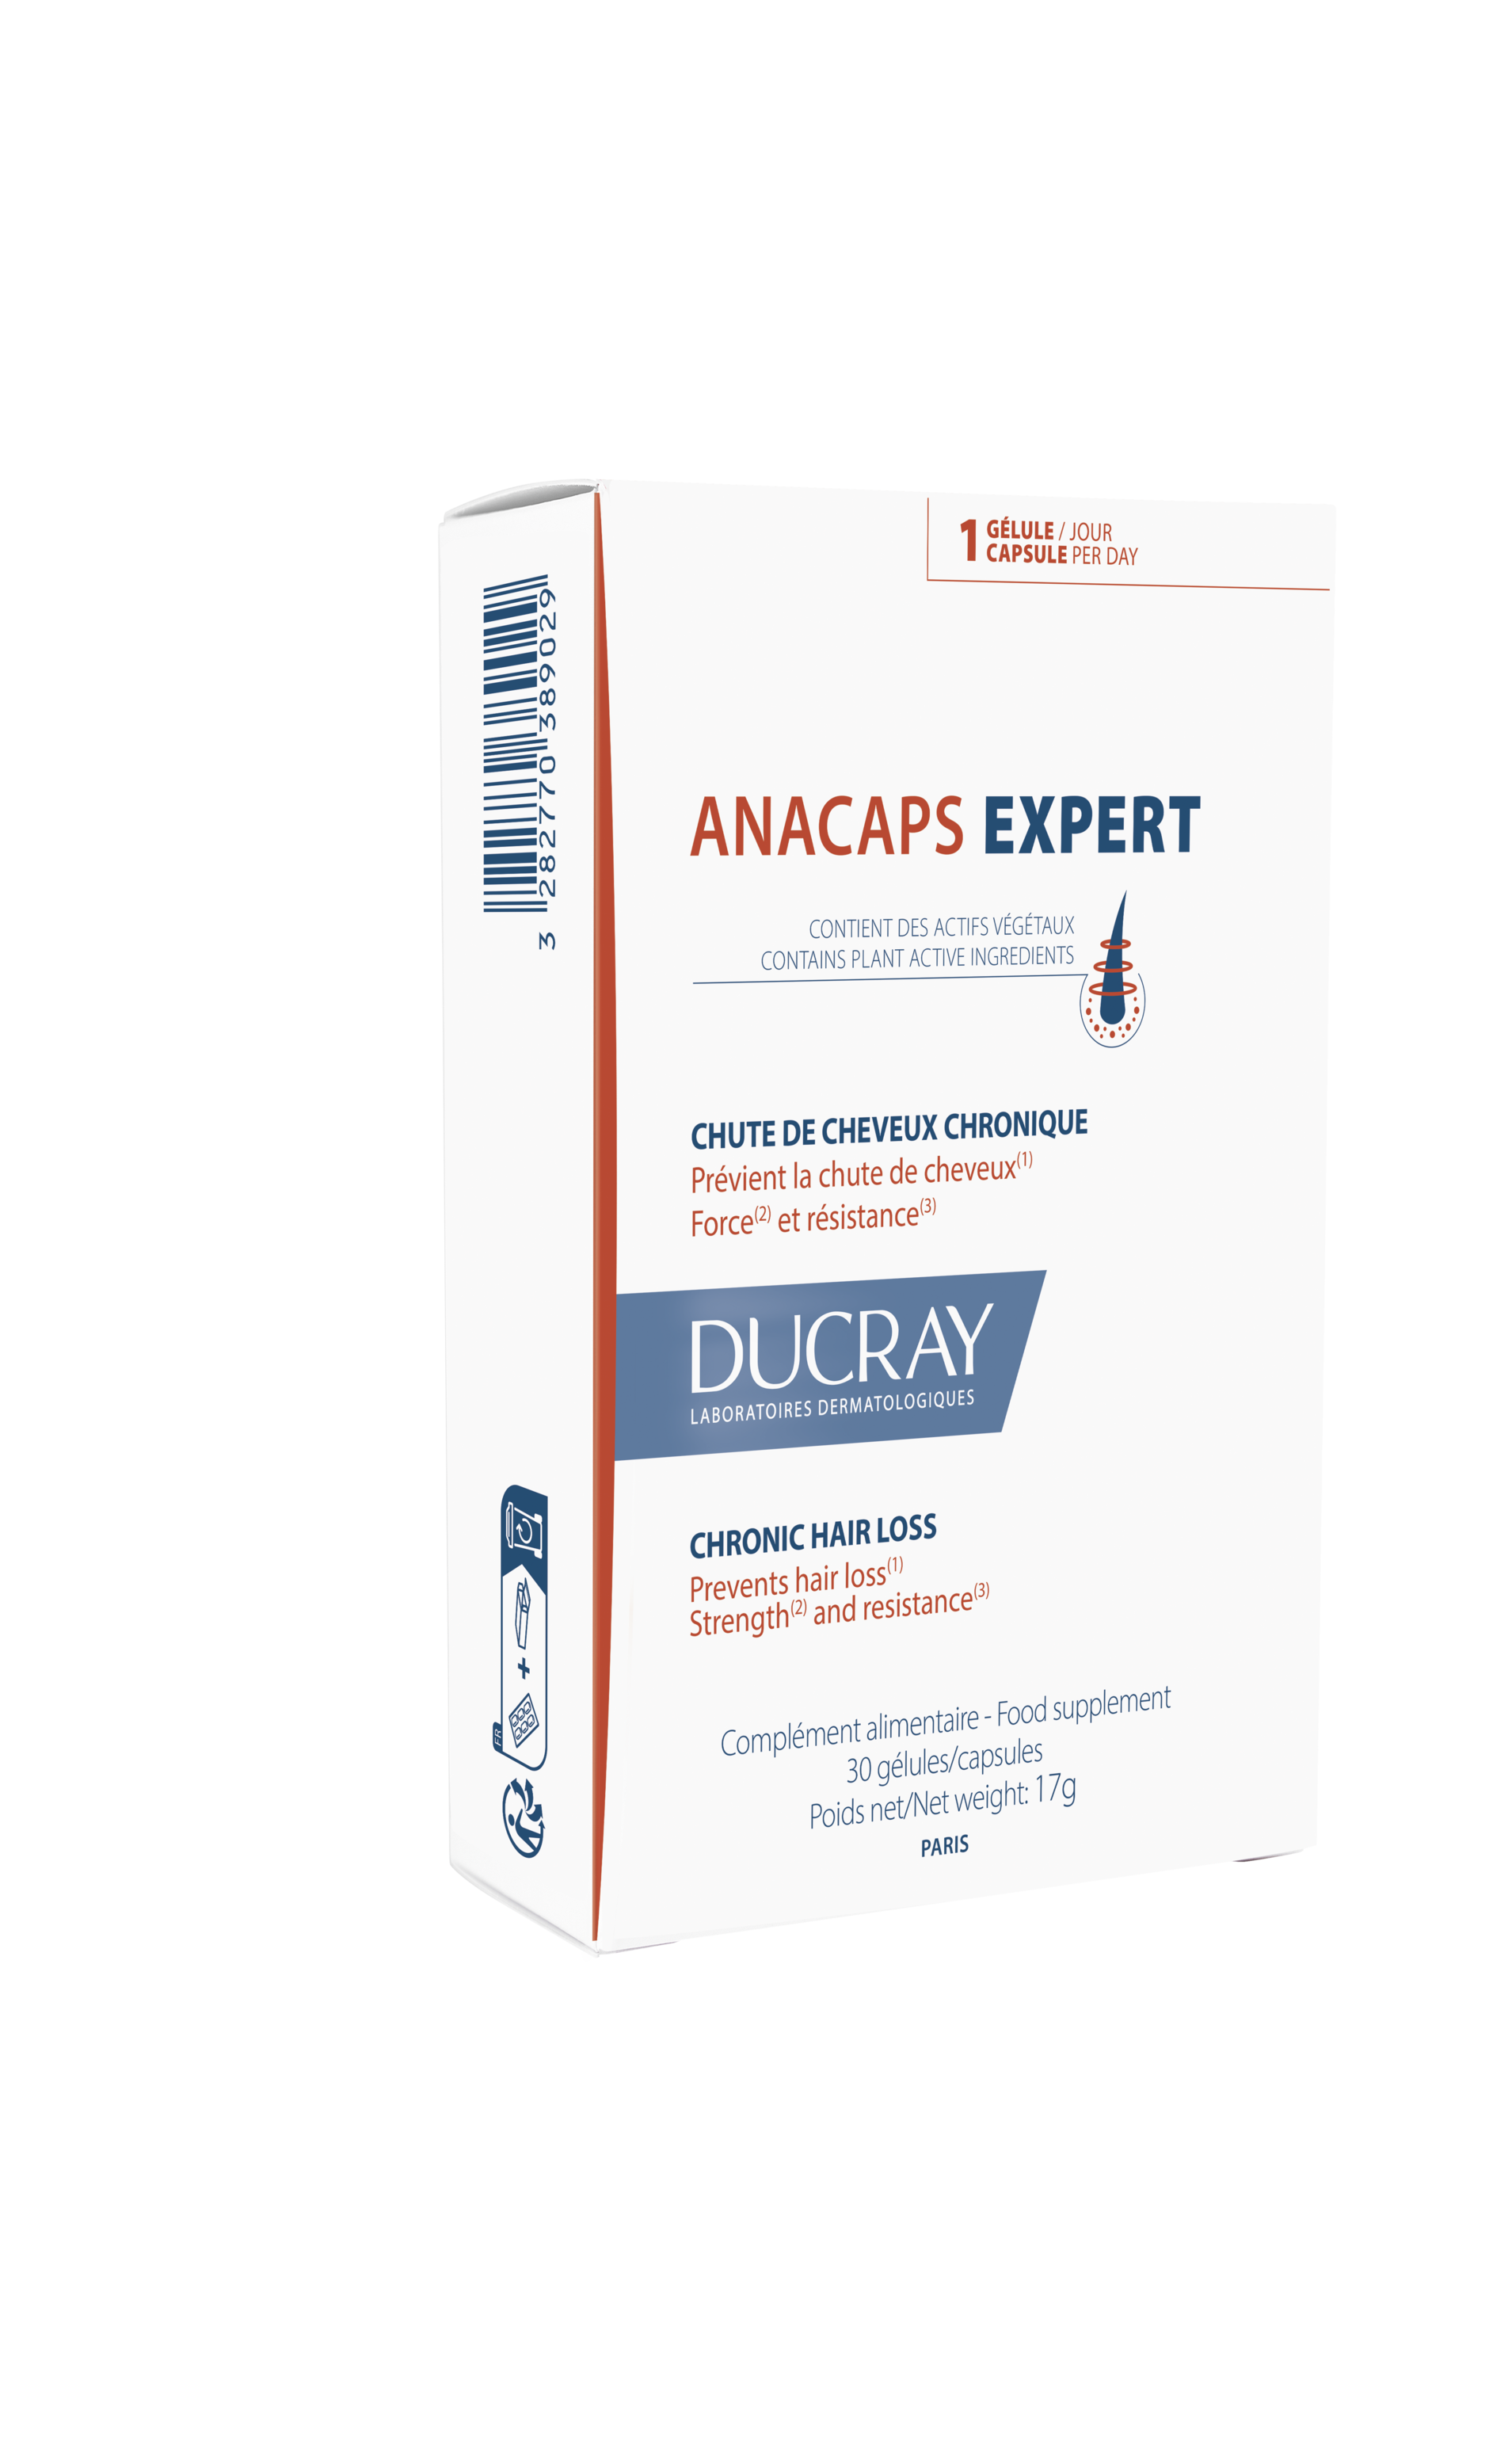 ანაკაფს ექსპერტი თმის ცვენის საწინააღმდეგო კაფსულები - დუკრე / ANACAPS EXPERT Chronic Hair Loss capsules – DUCRAY